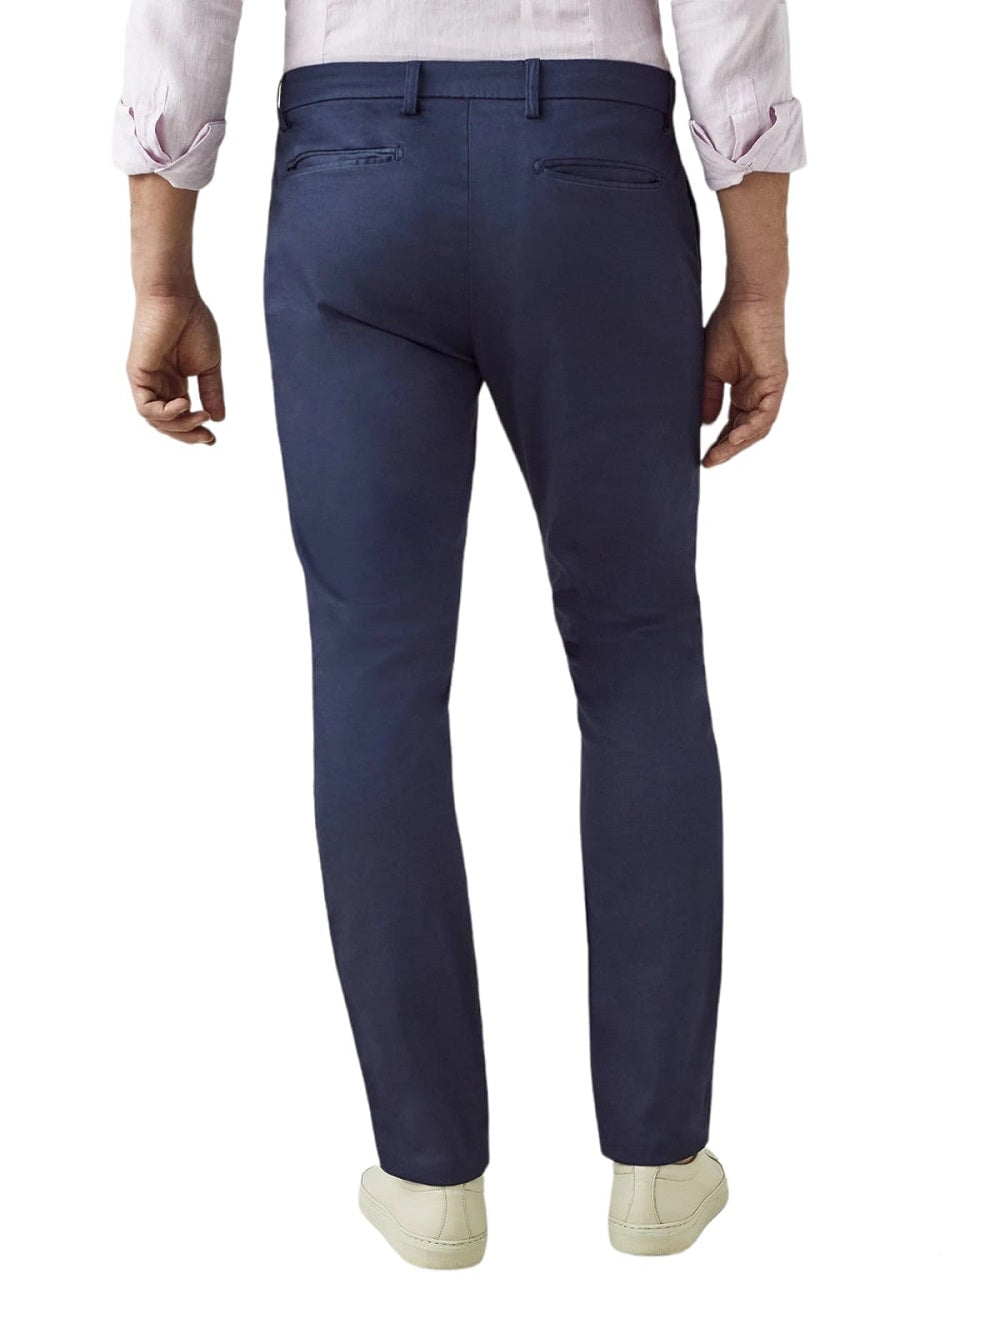 Pantalone uomo BESILENT modello ANTIGUA BSPA0189